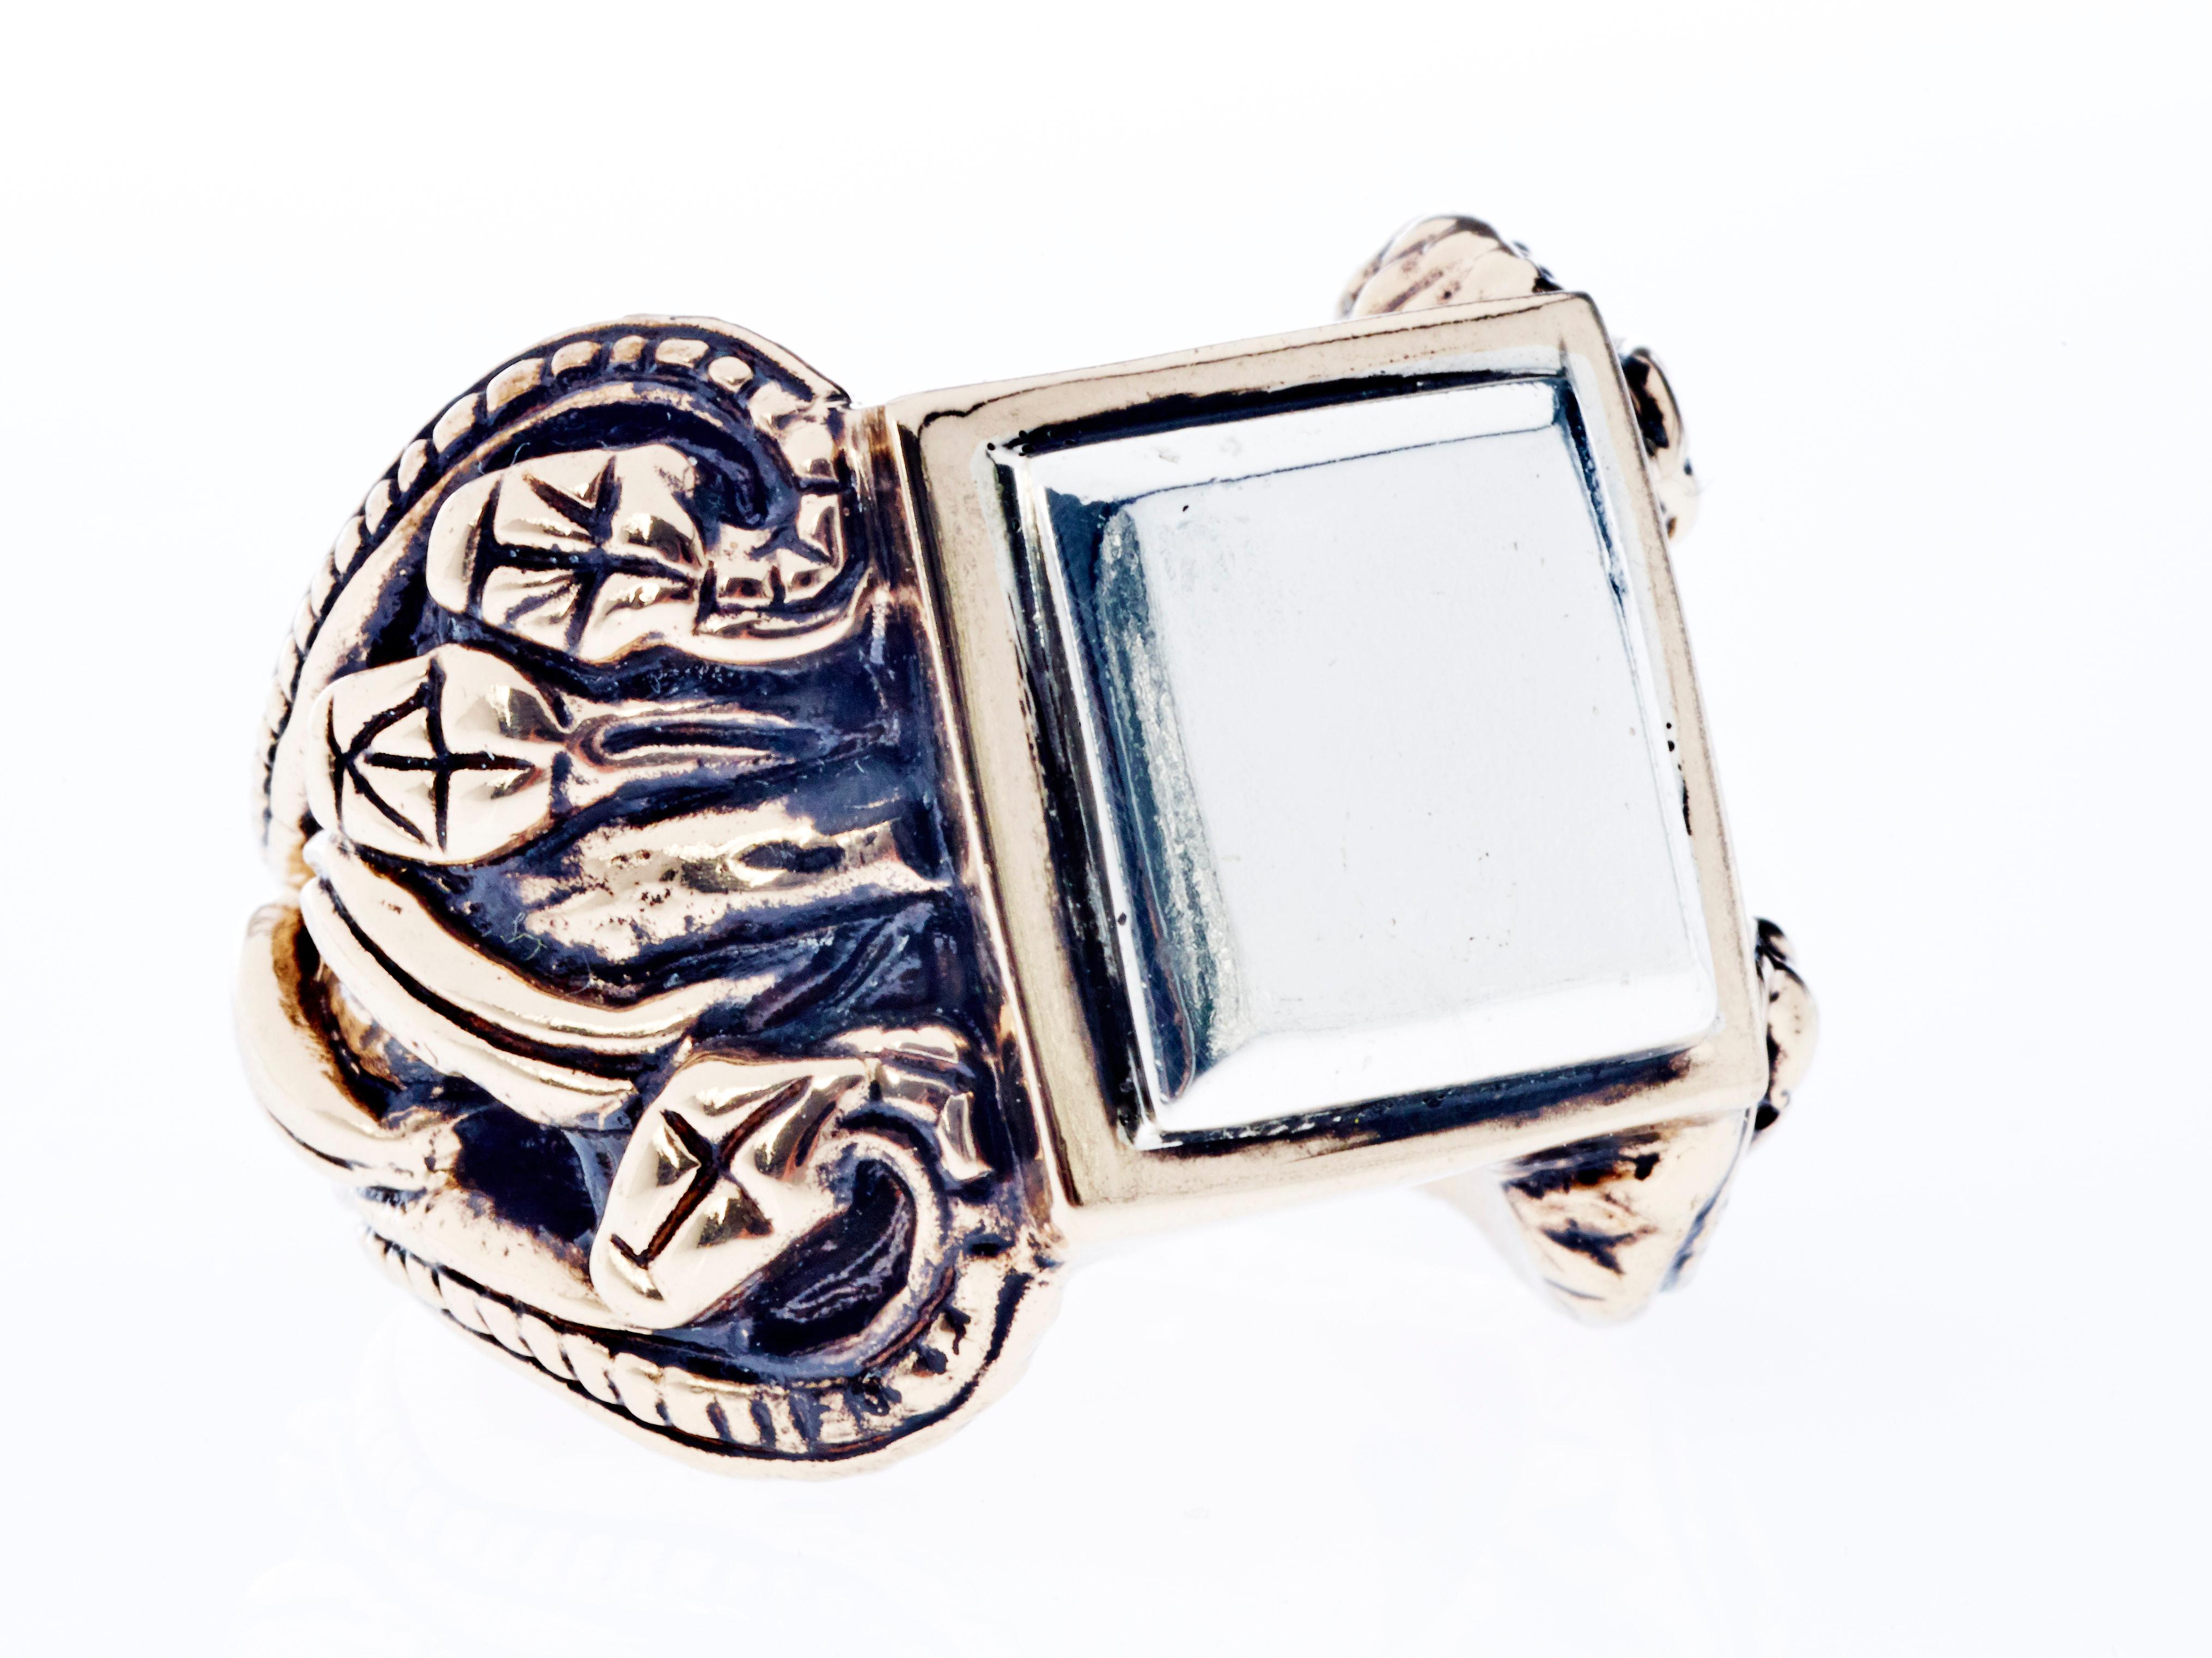 Bague serpent style victorien argent antique bronze J Dauphin

Bague J DAUPHIN en bronze et argent avec placage antique.

Le serpent, ou serpent, est l'un des symboles mythologiques les plus anciens et les plus répandus. 
Historiquement, les